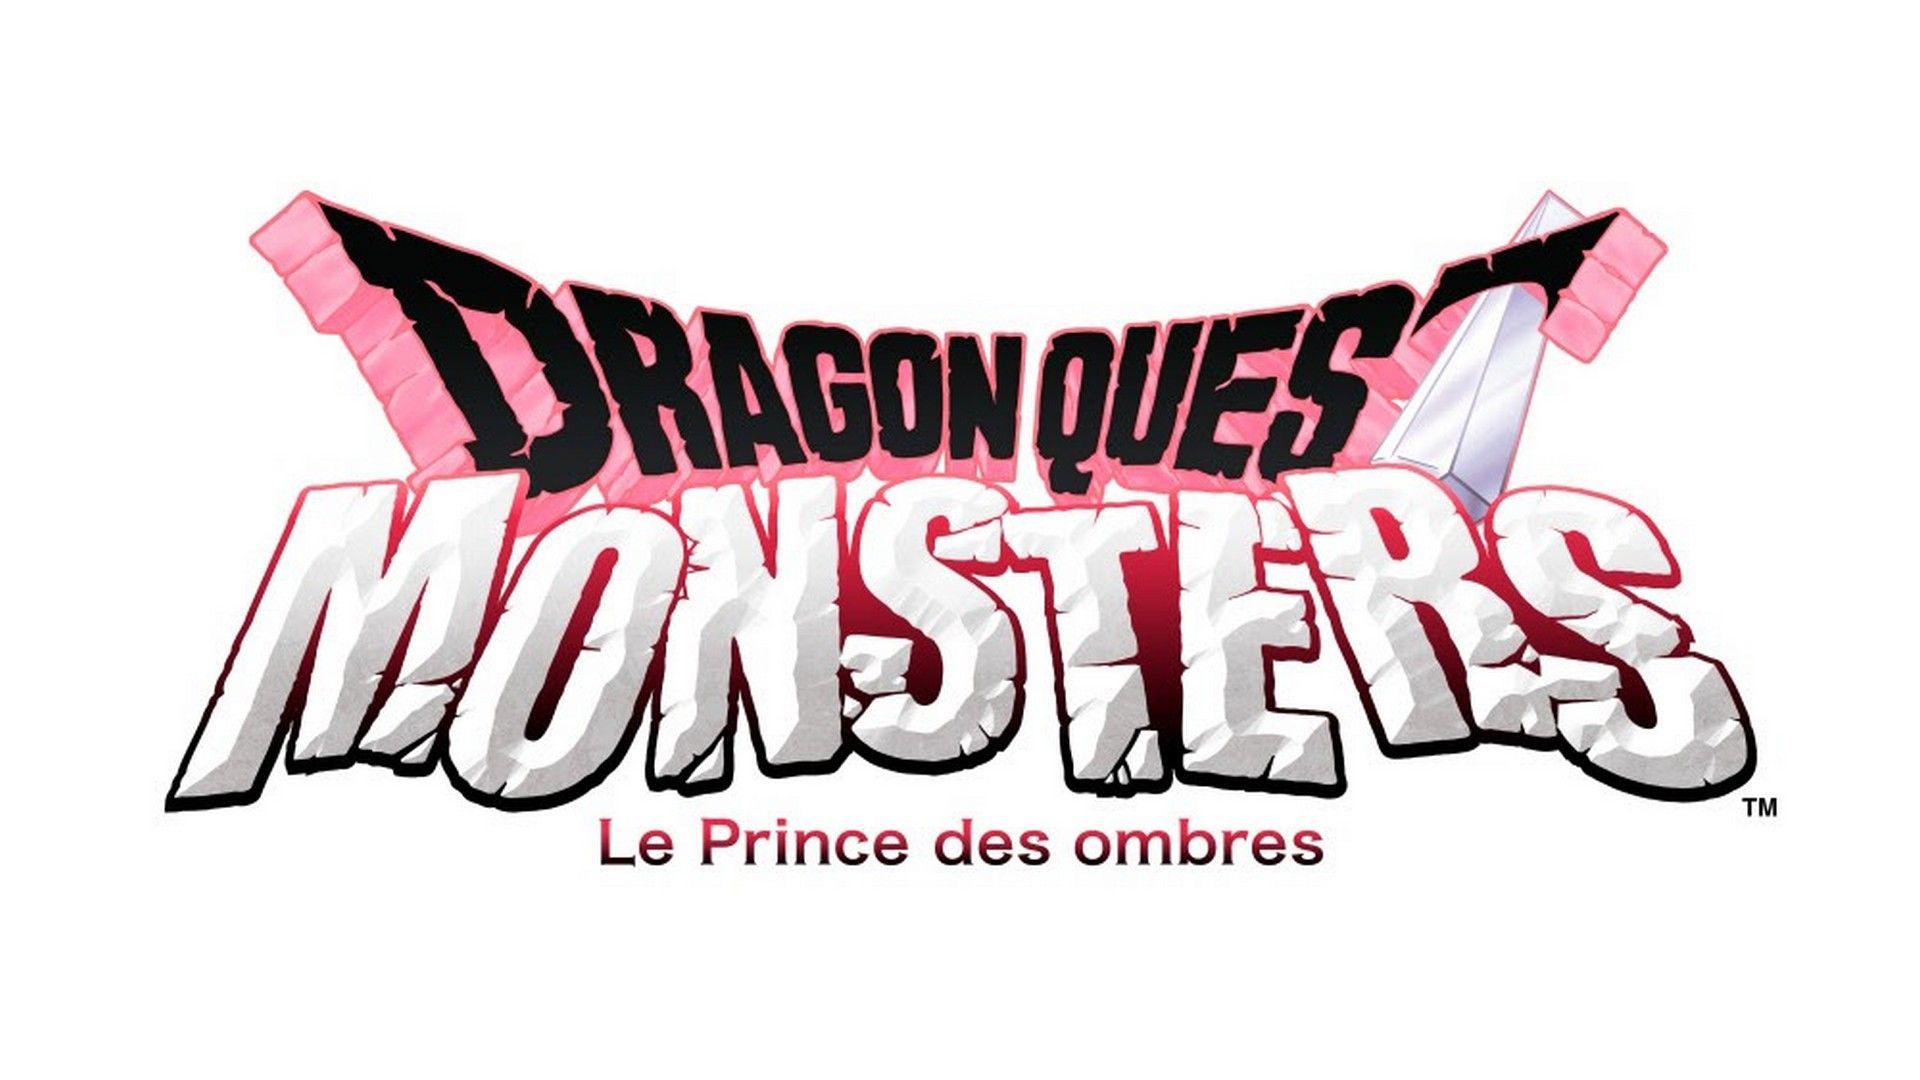 Découvrez le prochain DRAGON QUEST. | News  - PSthc.fr